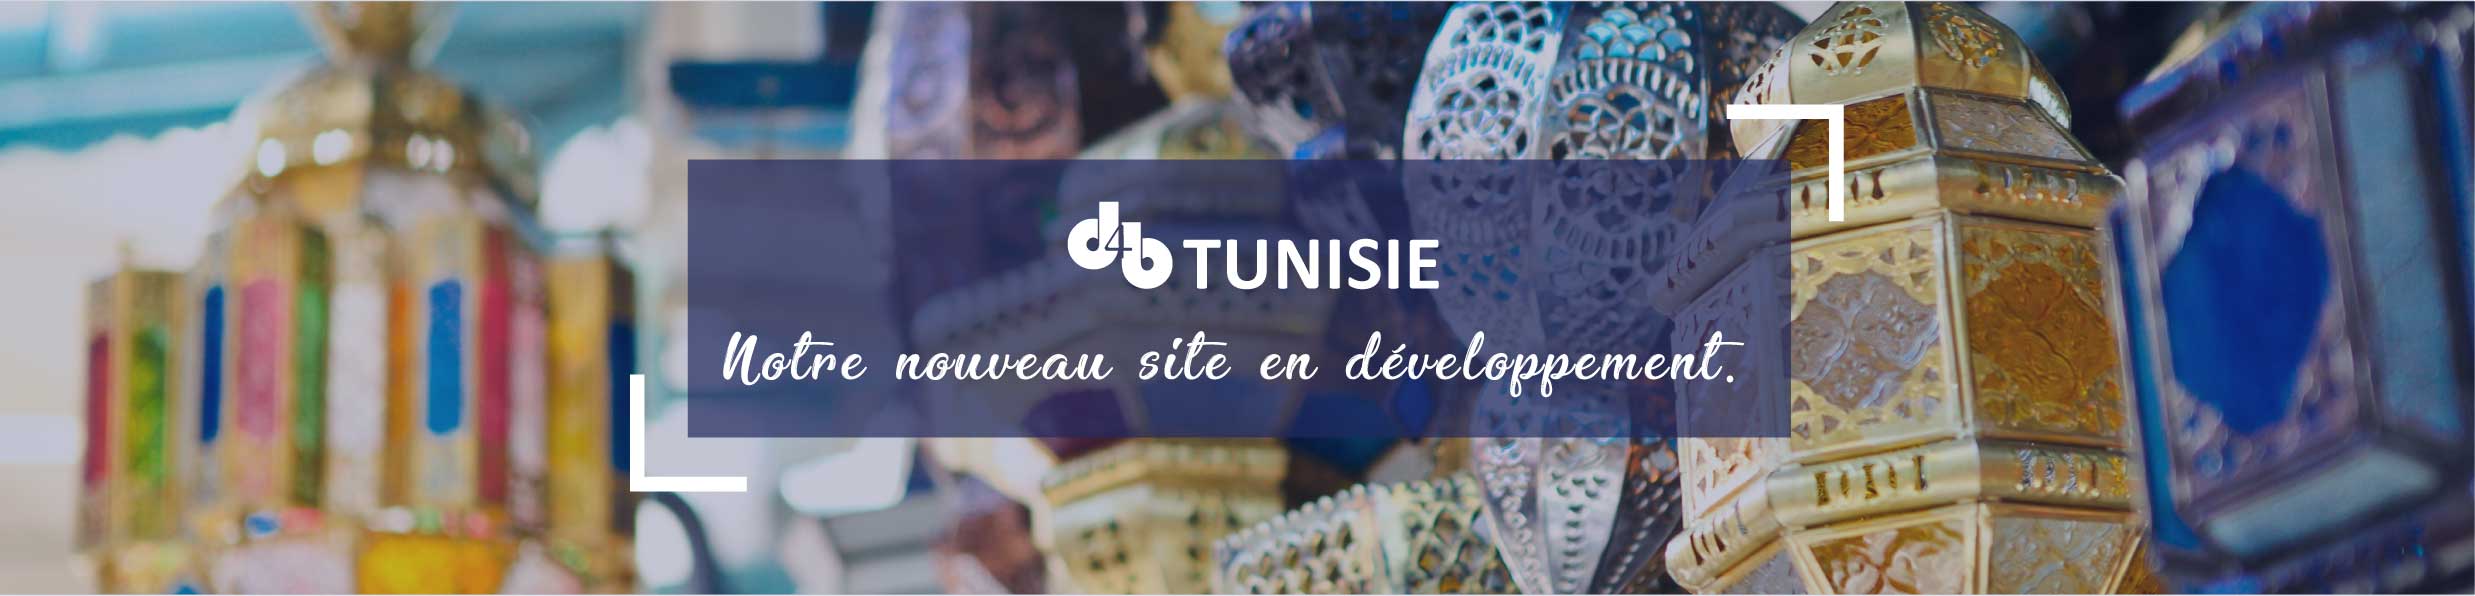 D4B Tunisie